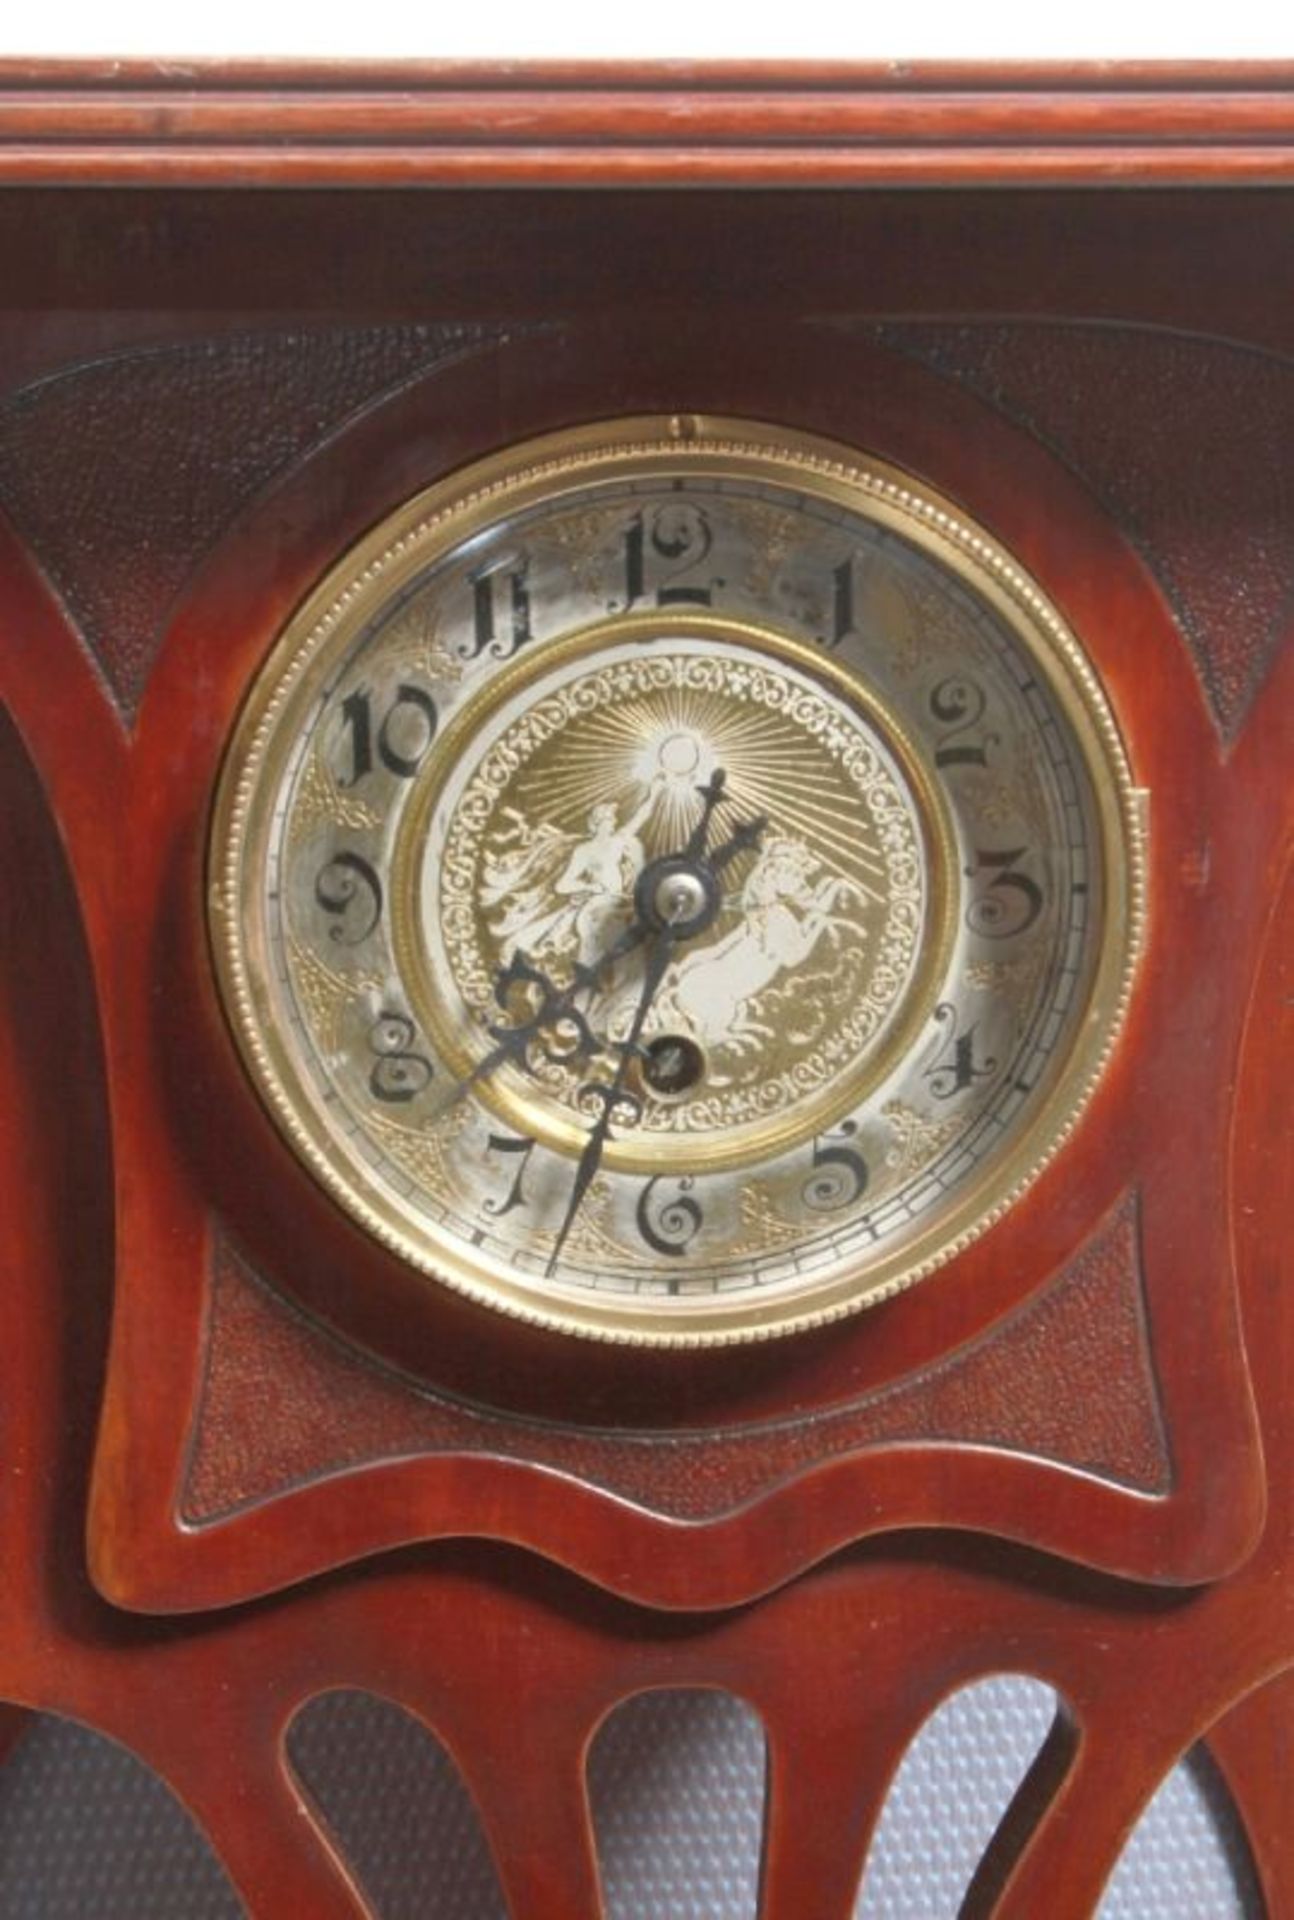 Jugendstil Etagere mit Uhr, dt., um 1910, Mahagoniholz, 4 Ablagen, stiltypische Form,unter der - Bild 2 aus 2